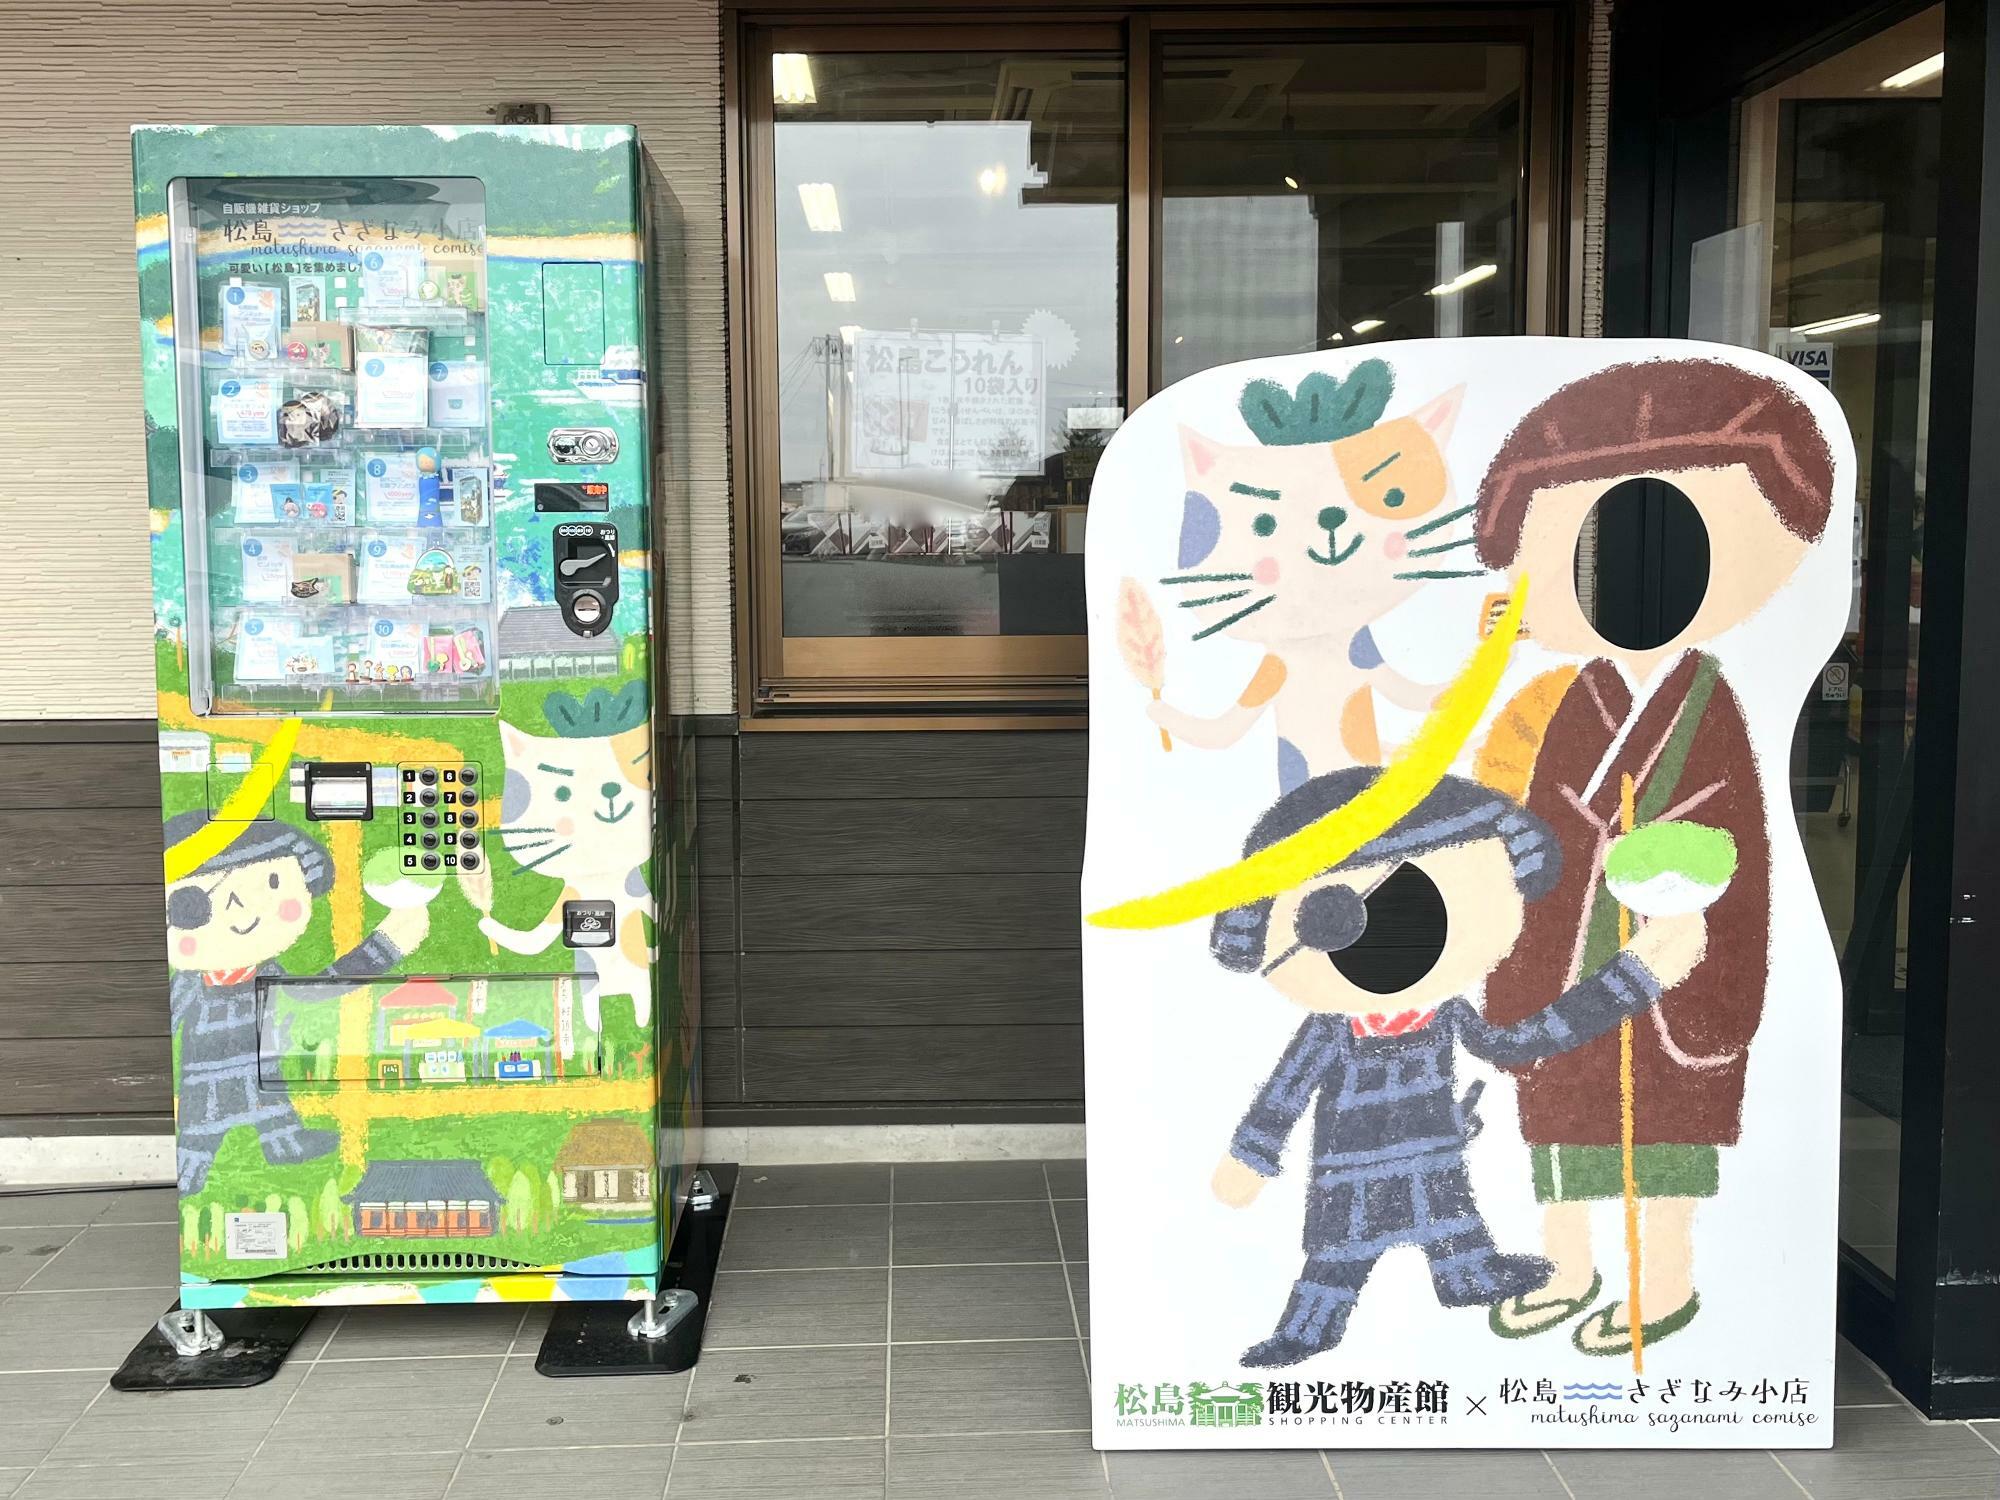 ▲ やわらかな緑色で「ほんわぁ」と和むイラストが描かれている自販機と顔出し看板